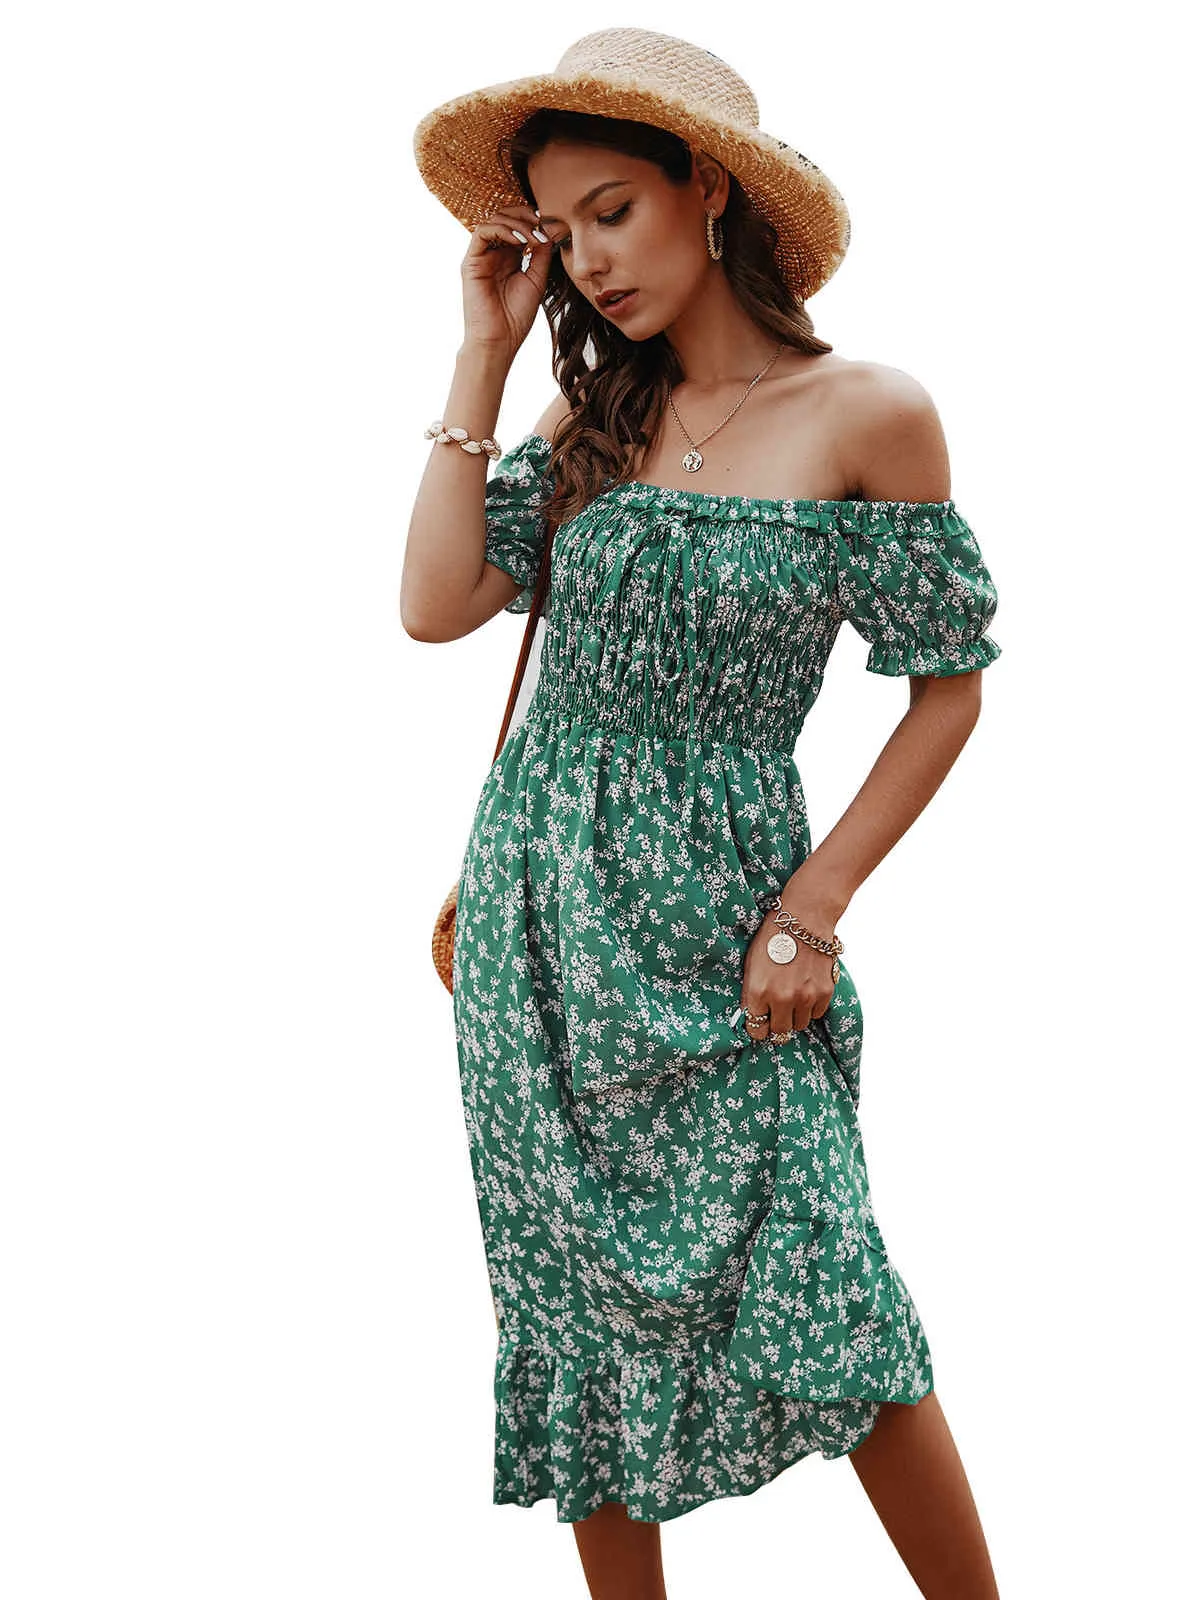 Robe Boho imprimé floral sexy sans bretelles Slash cou à manches courtes femmes robes robes de plage d'épaule d'été robe midi Mujer 210507